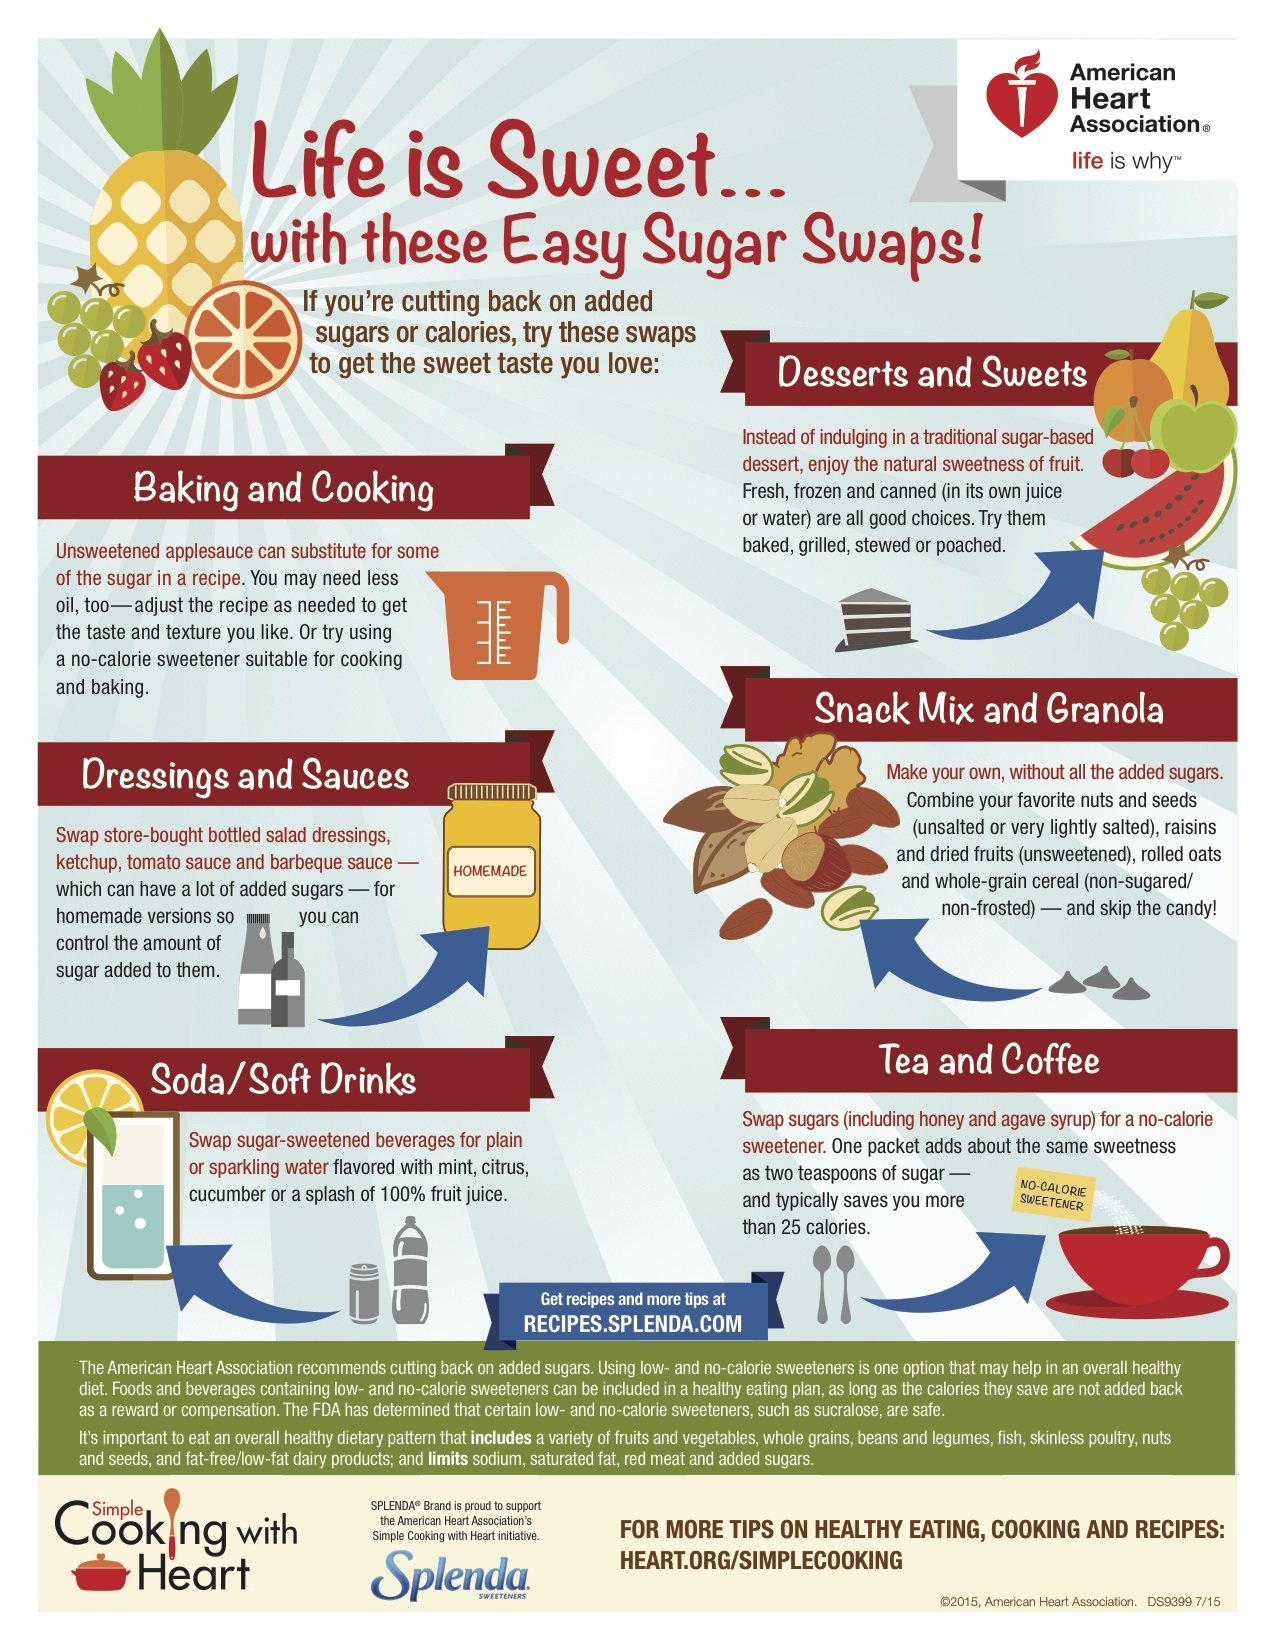 7 Ways to Reduce Sugar Intake Daily